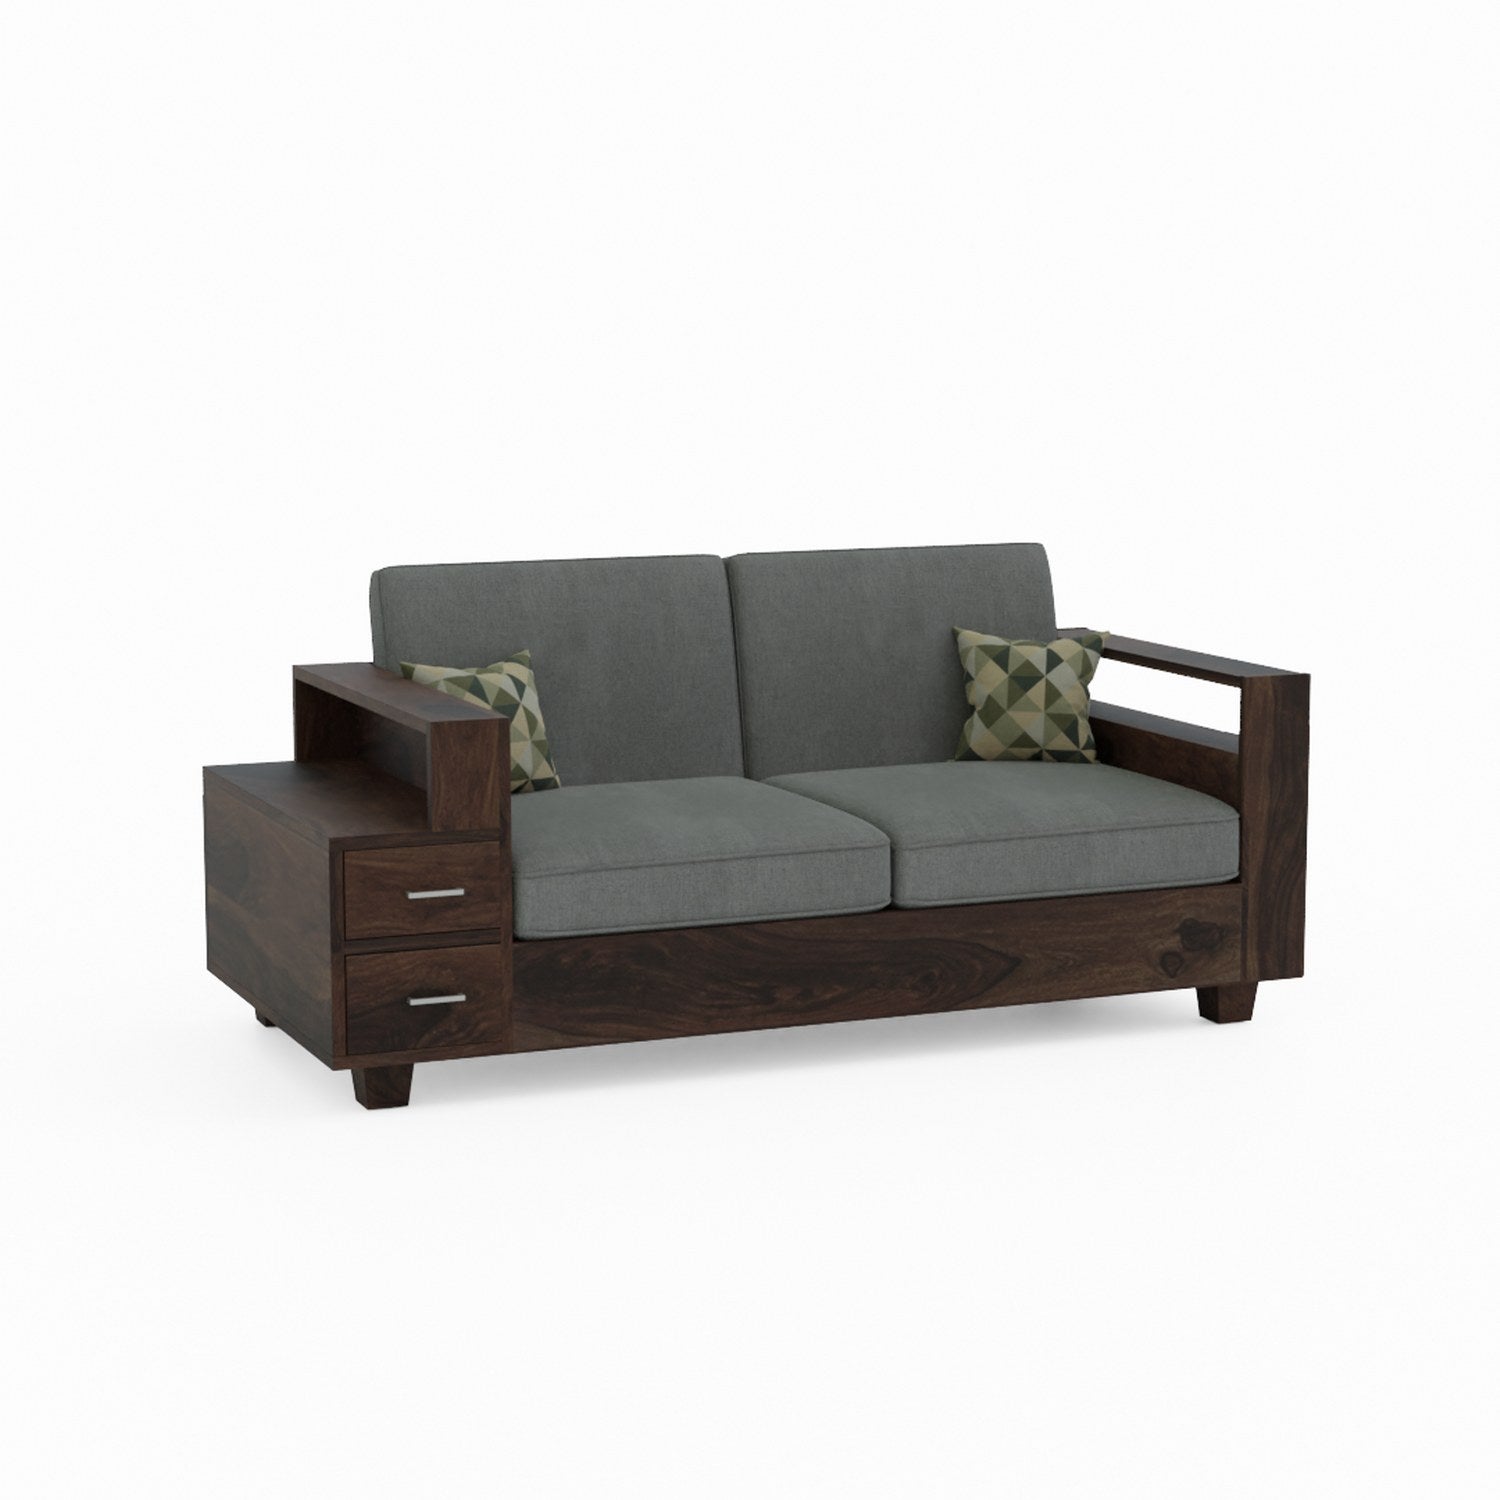 Woodora Solid Sheesham Wood 5 Seater Sofa Set  (3+2, Walnut Finish)